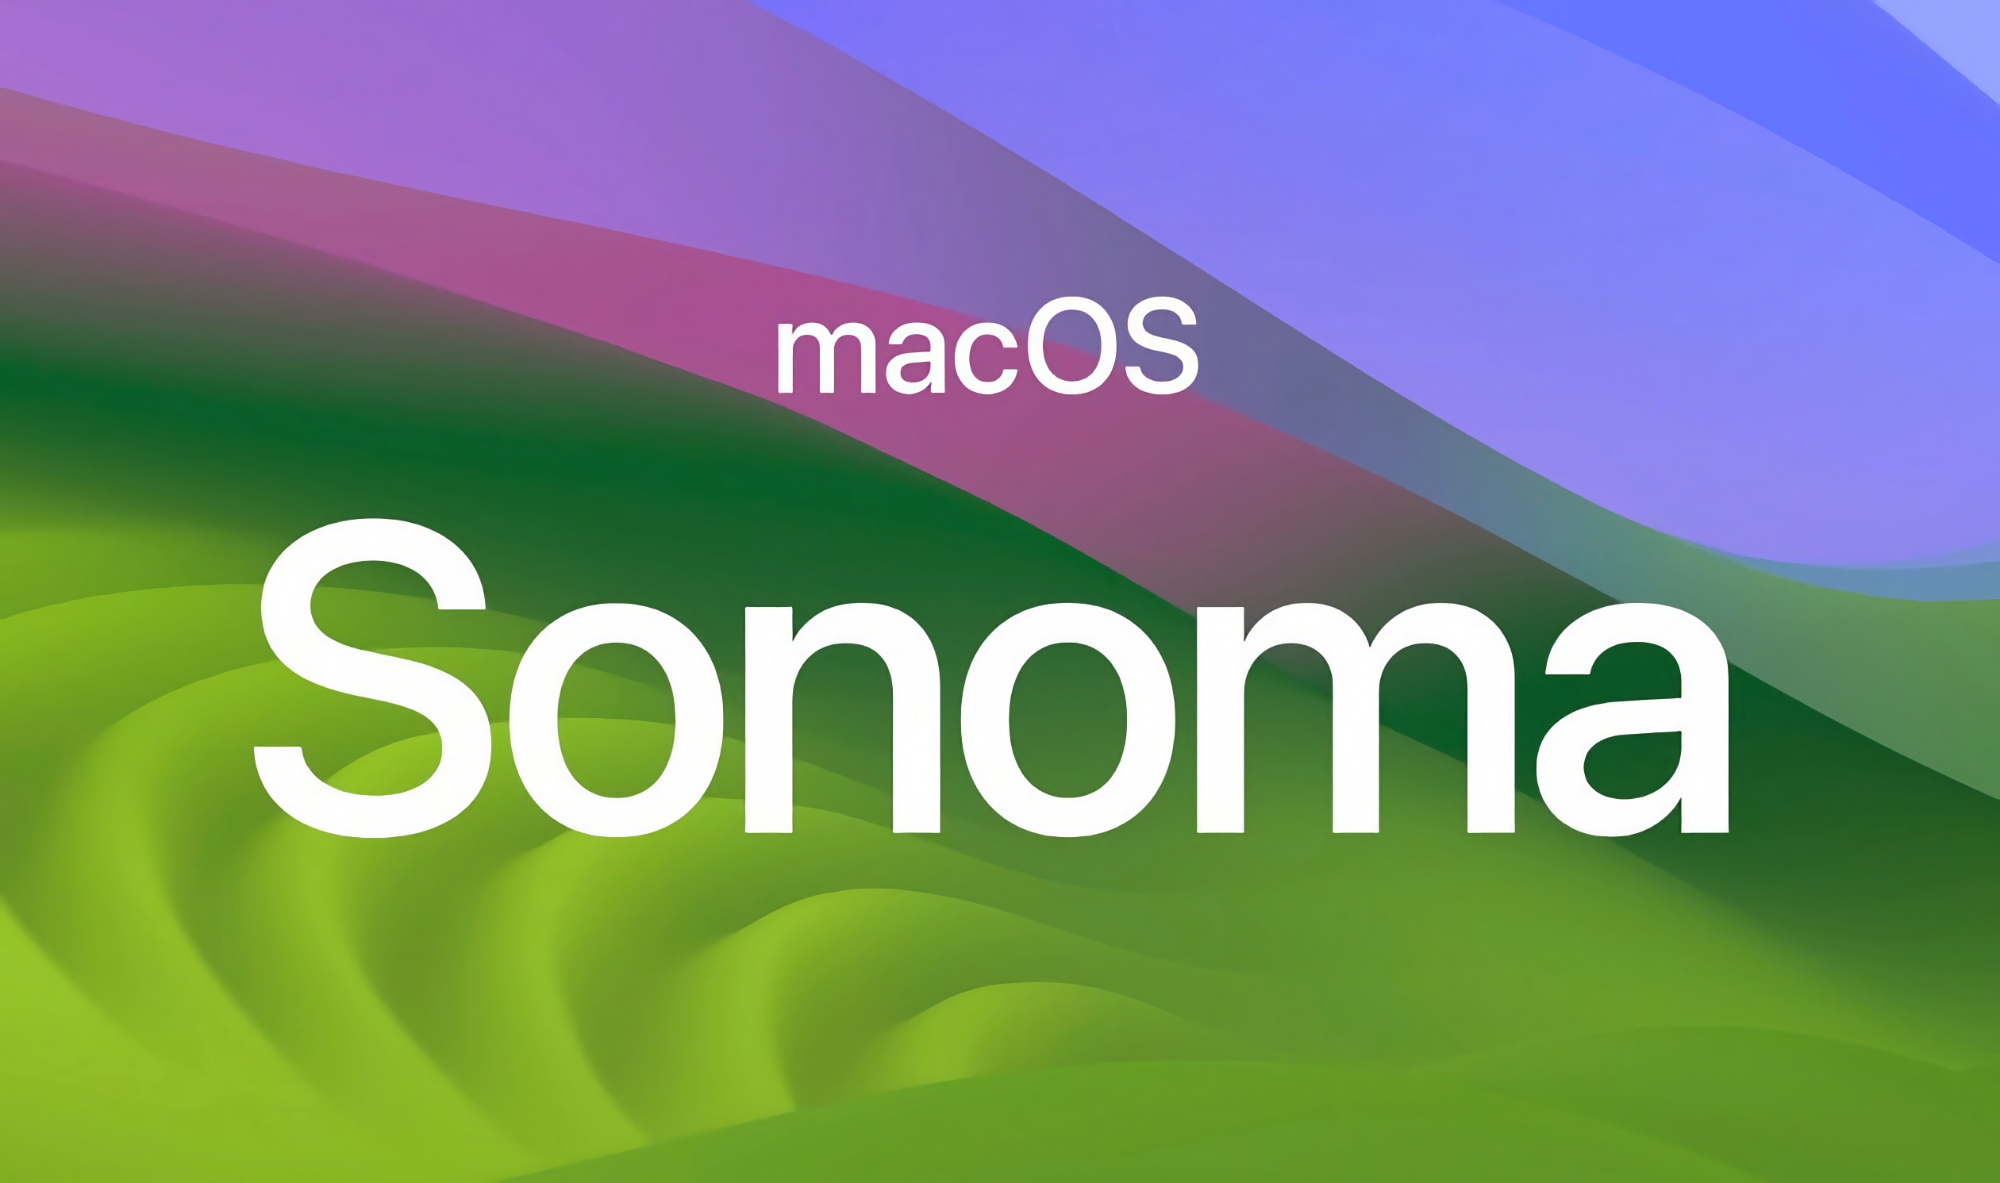 Po iOS 17.4 Beta 4: Apple ogłosiło czwartą wersję beta systemu macOS Sonoma 14.4